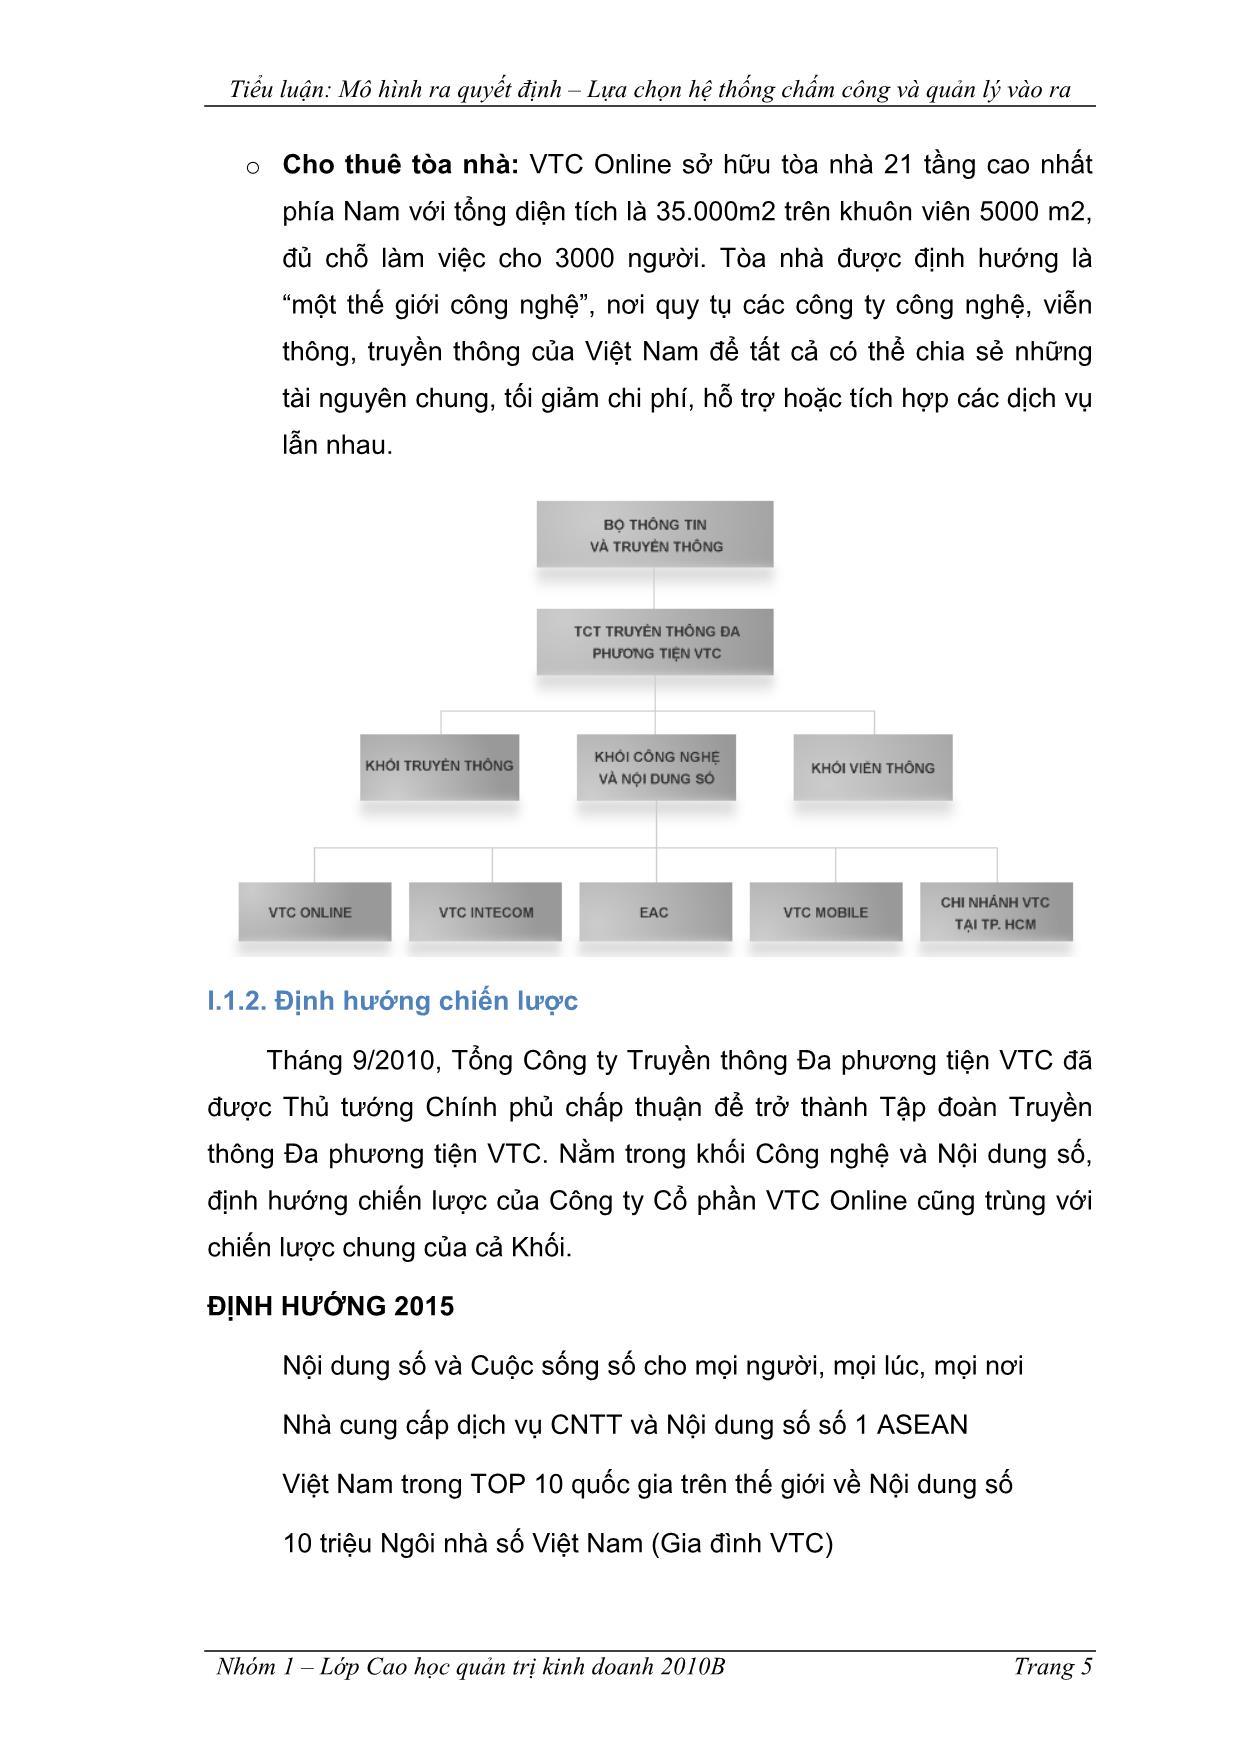 Tiểu luận Đánh giá phương án lựa chọn hệ thống chấm công và quản lý vào ra công ty cổ phần VTC truyền thông trực tuyến trang 5